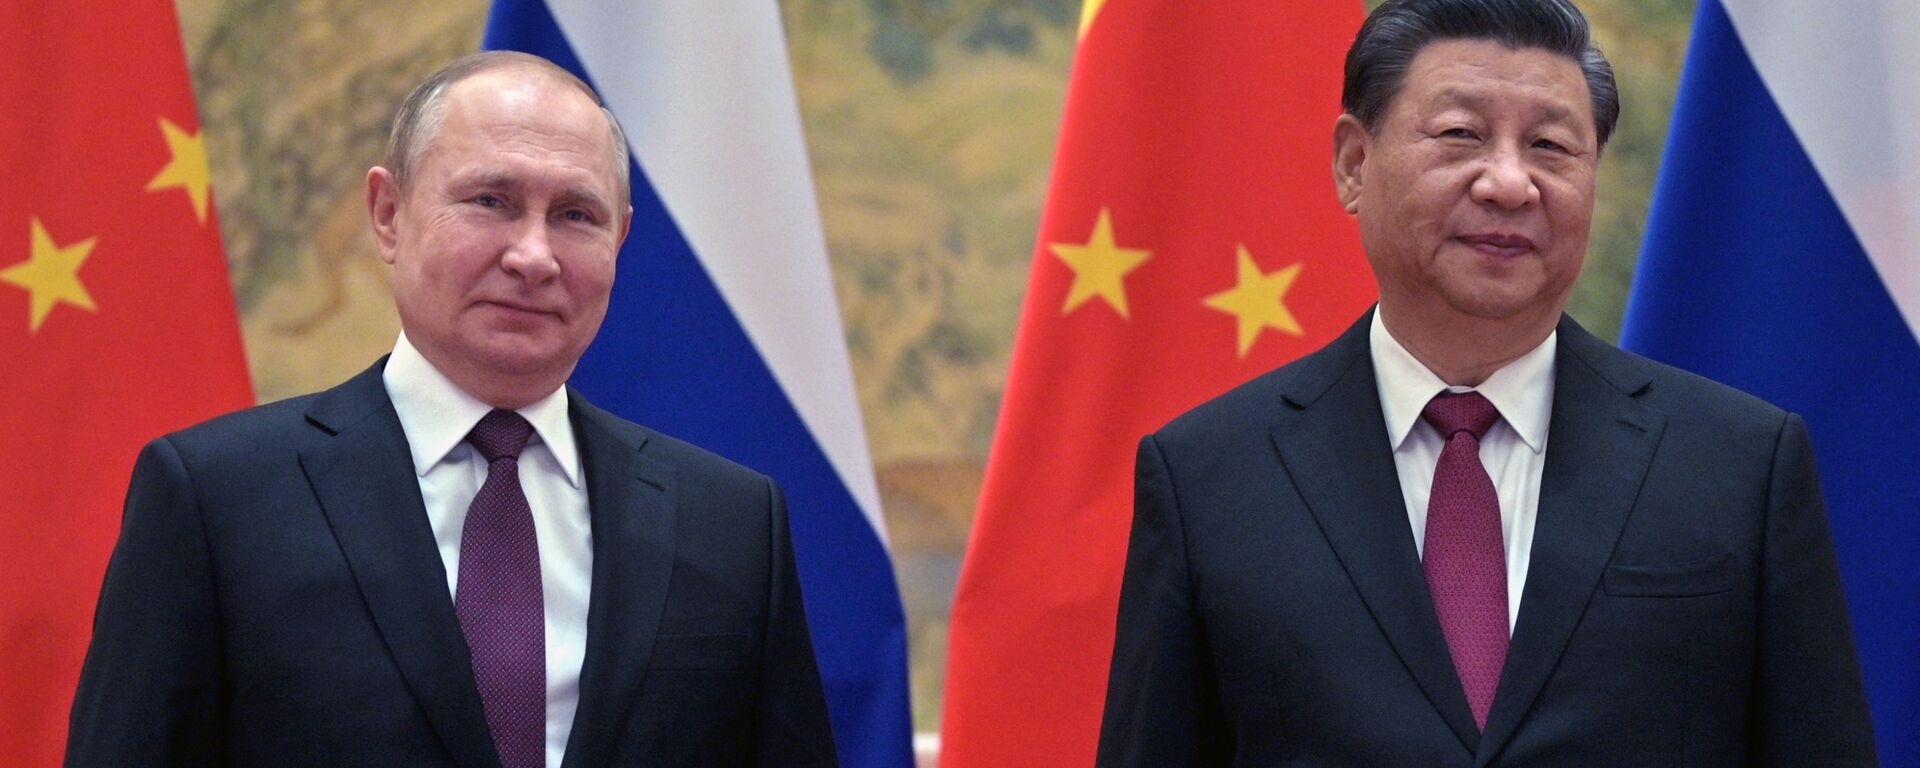 چرا چین در اوکراین در کنار روسیه قرار گرفته؟